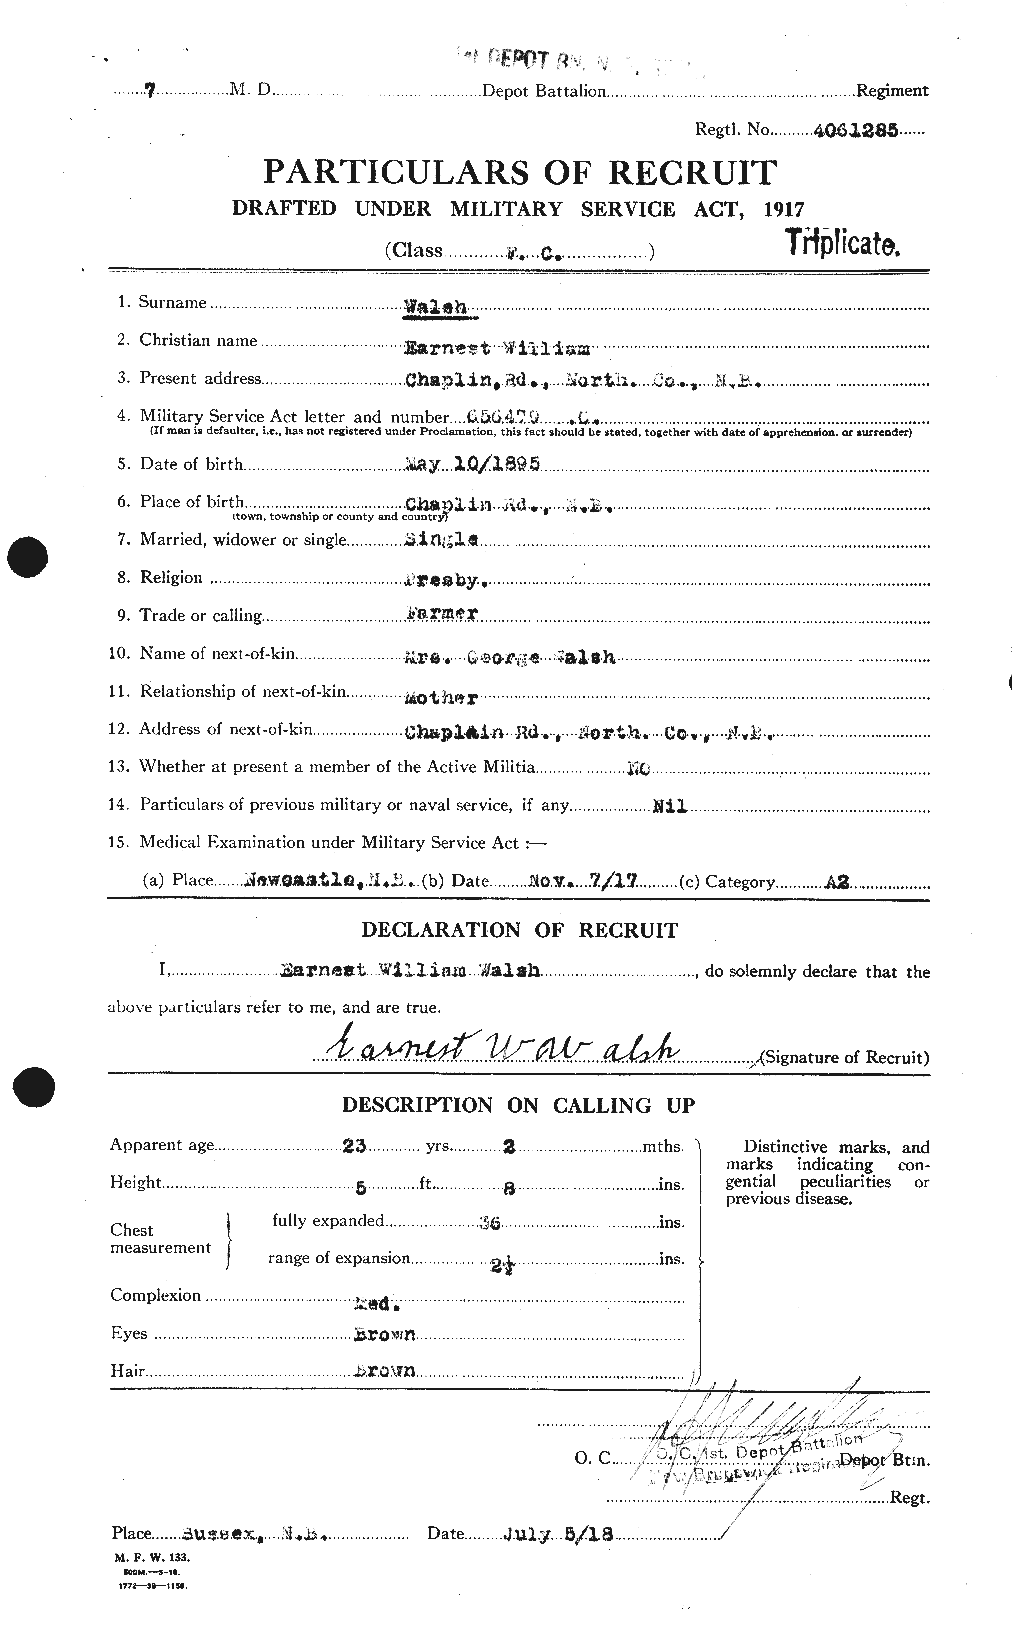 Dossiers du Personnel de la Première Guerre mondiale - CEC 652712a